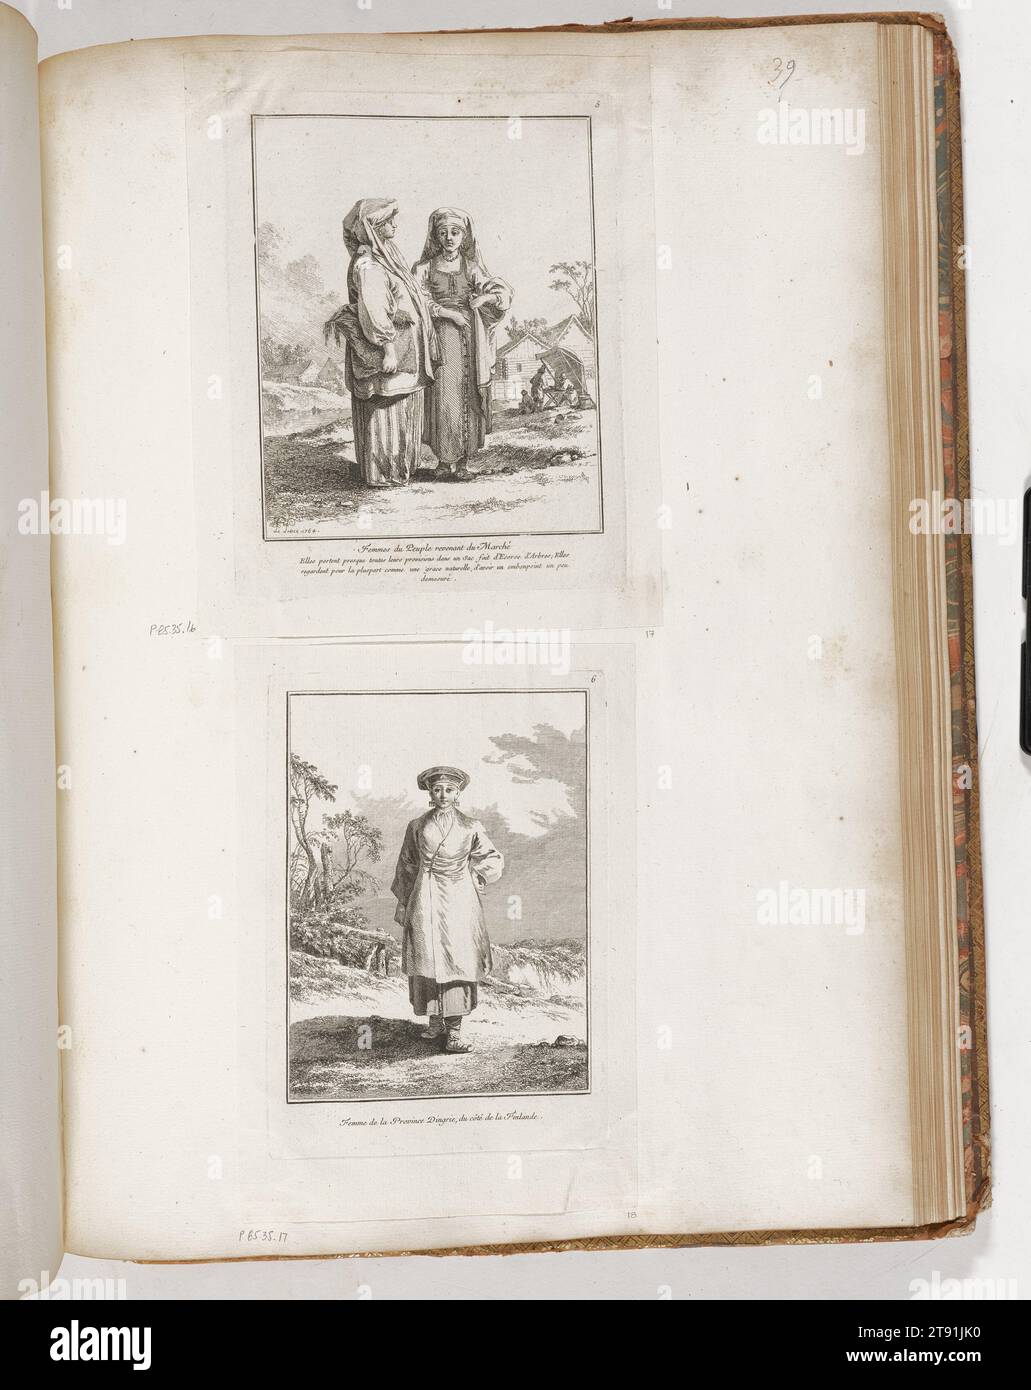 Bauernfrauen, die vom Markt zurückkommen, 1764, Jean-Baptiste Le Prince, Französisch, 1734 - 1781, 3/8 x 6 Zoll (18,73 x 15,24 cm) (Bild)8 3/4 x 6 7/8 Zoll (22,23 x 17,46 cm) (Platte)10 1/8 x 8 1/8 Zoll (25,72 x 20,64 cm) (Blatt), Ätzen, Frankreich, 18. Jahrhundert Stockfoto